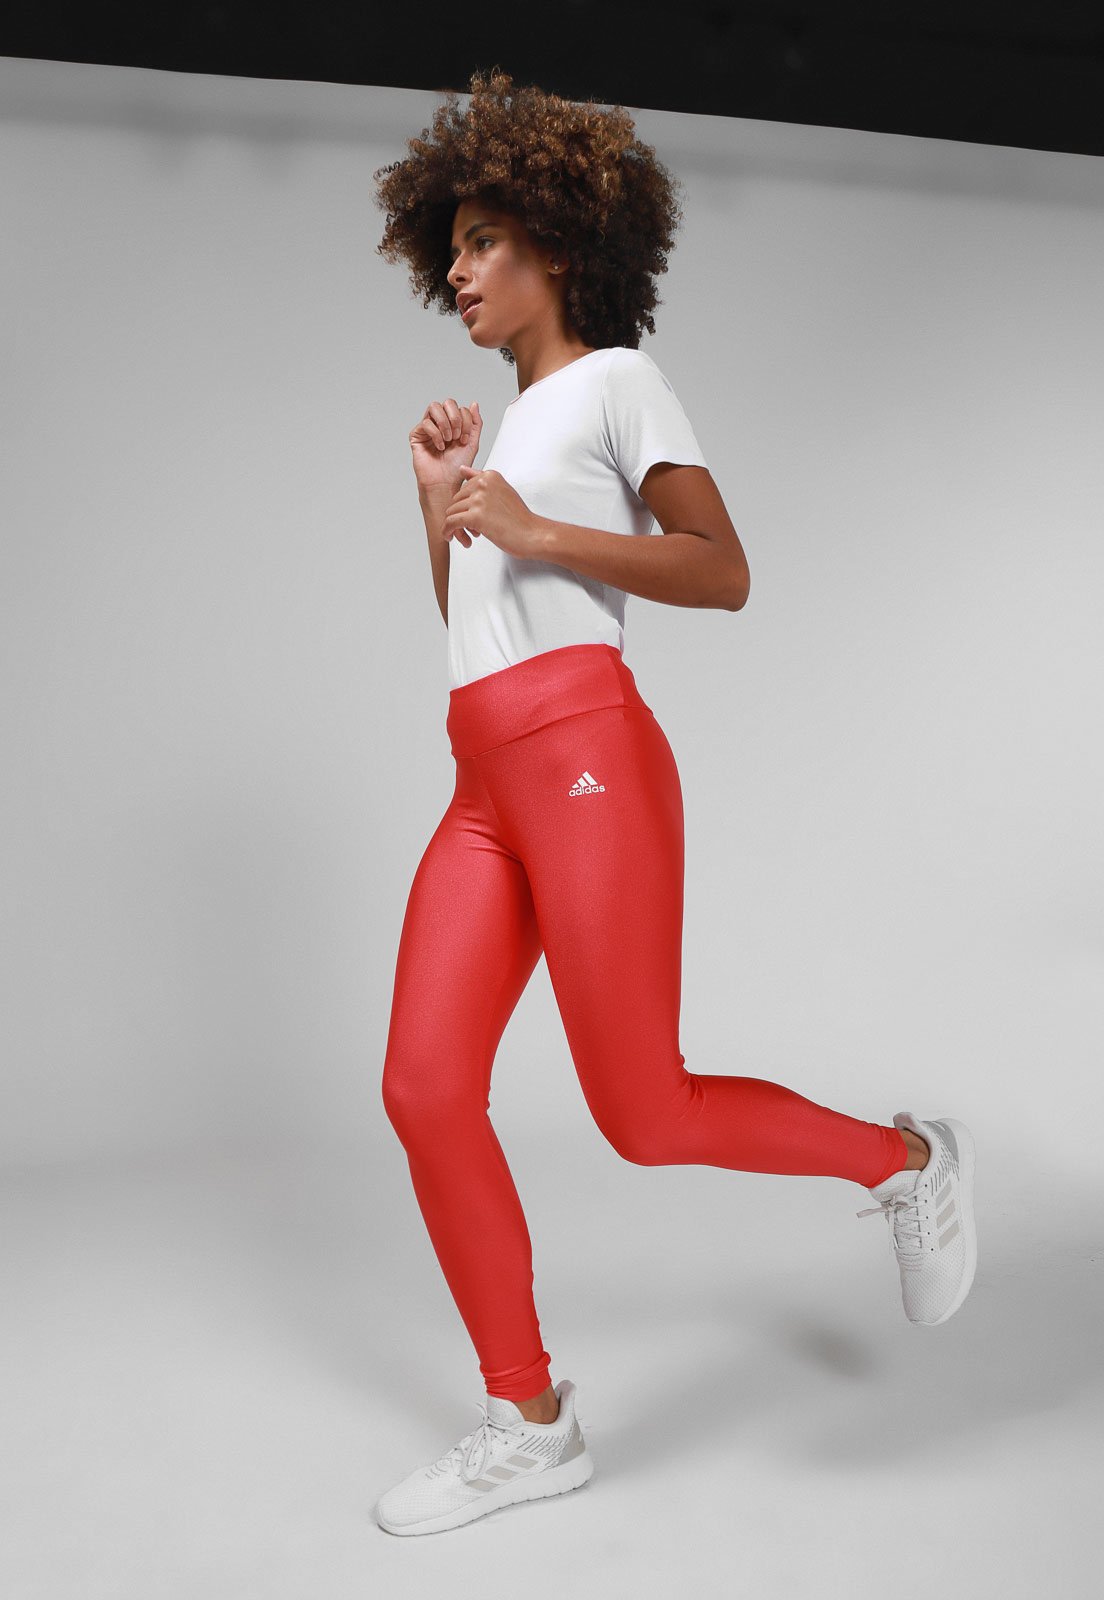 Legging adidas Performance Solid Lam Vermelha - Compre Agora